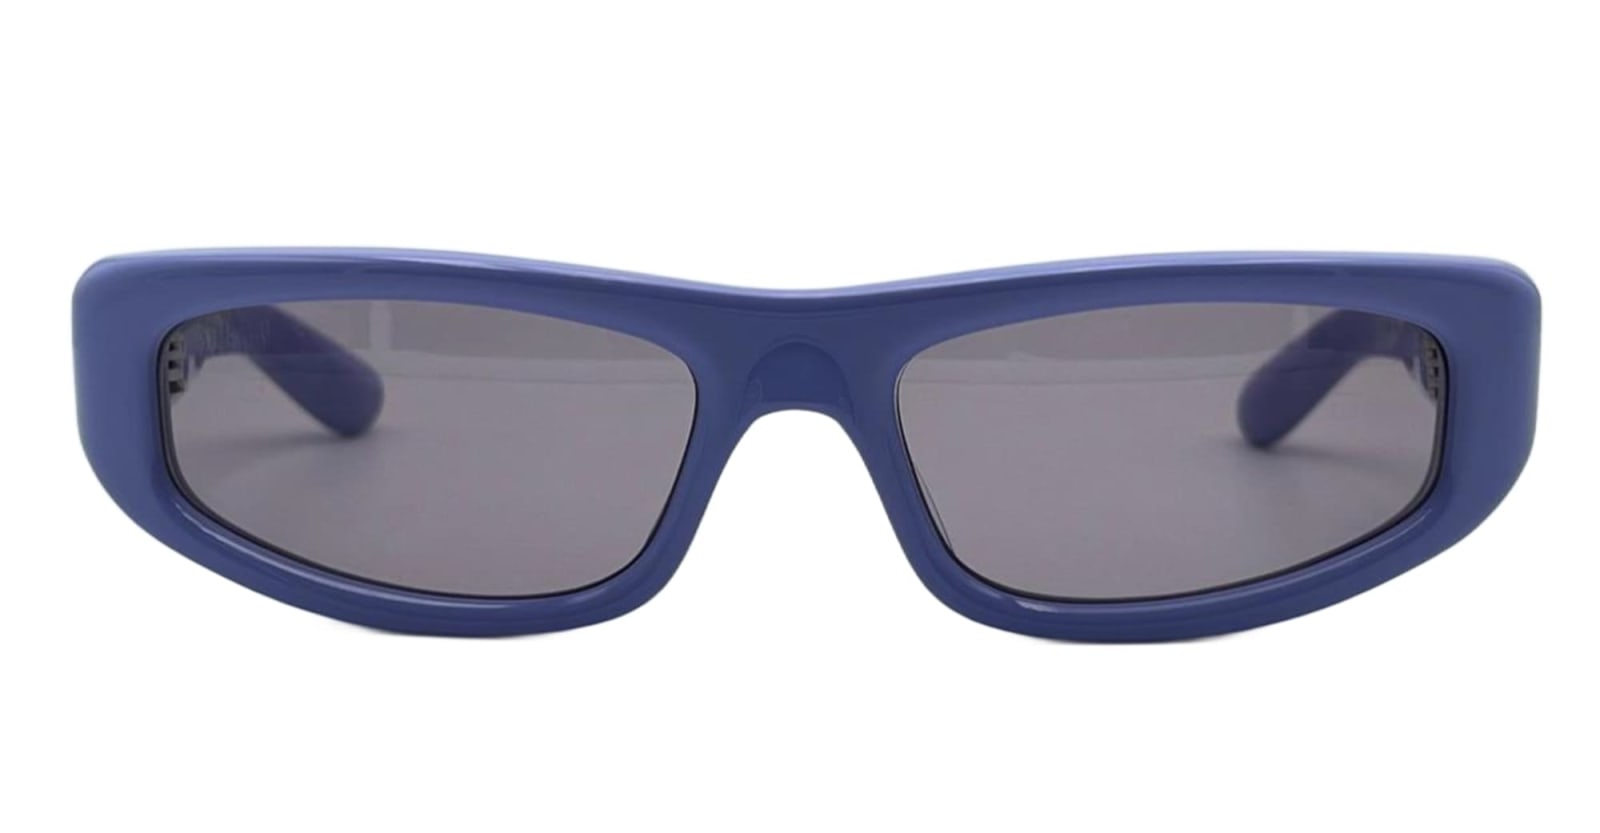 Roller - Euphoria Sunglasses